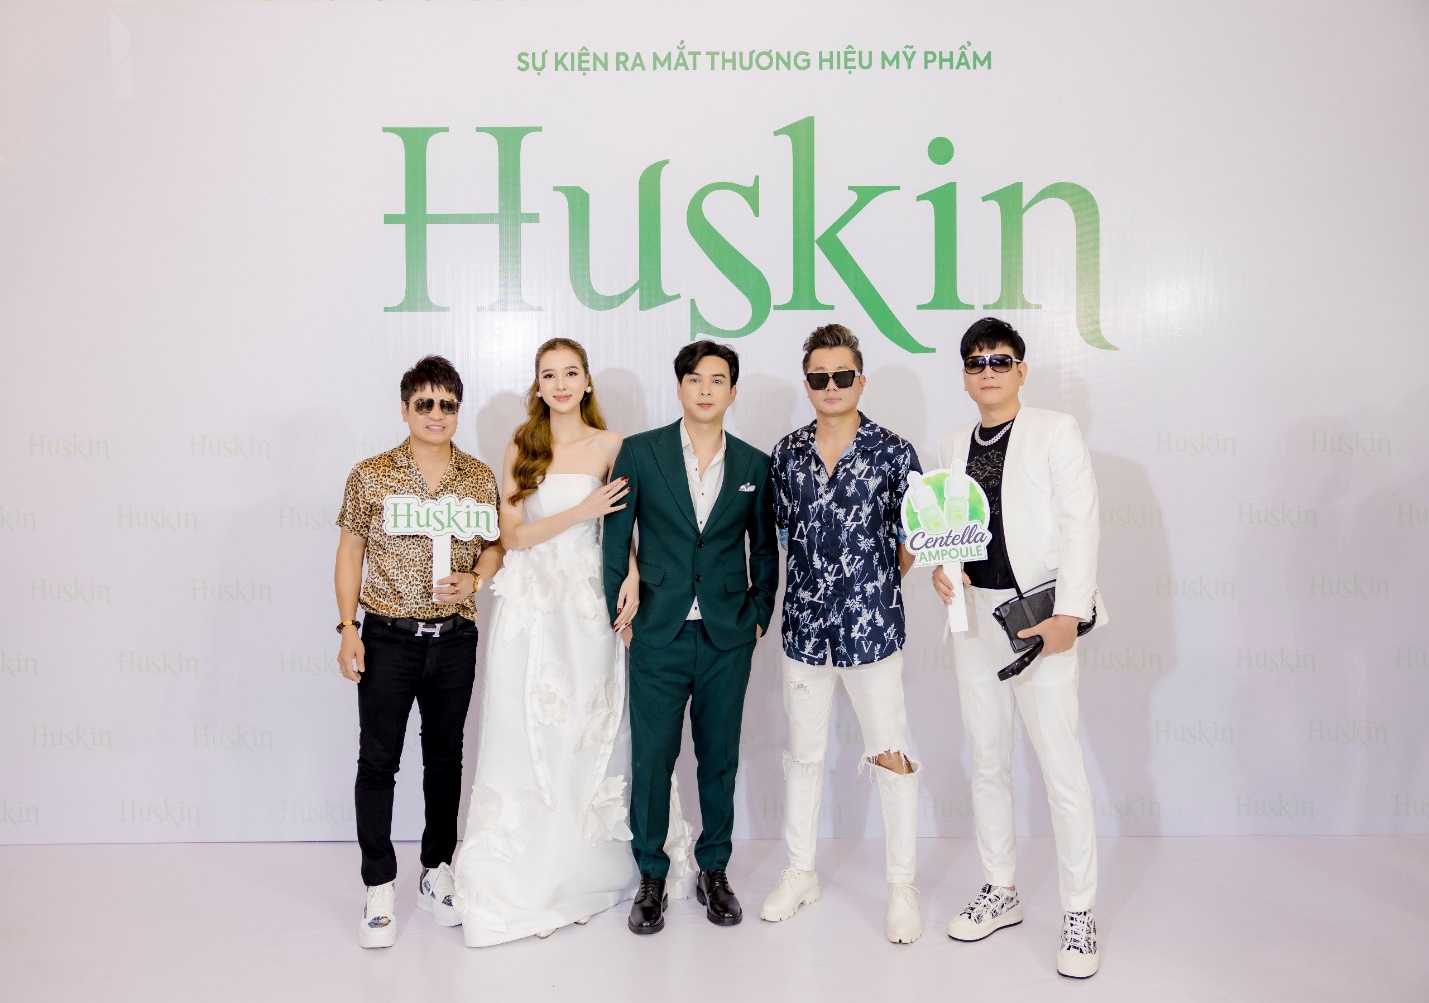 Vợ chồng Hồ Quang Hiếu ra mắt thương hiệu mỹ phẩm Huskin - Ảnh 1.